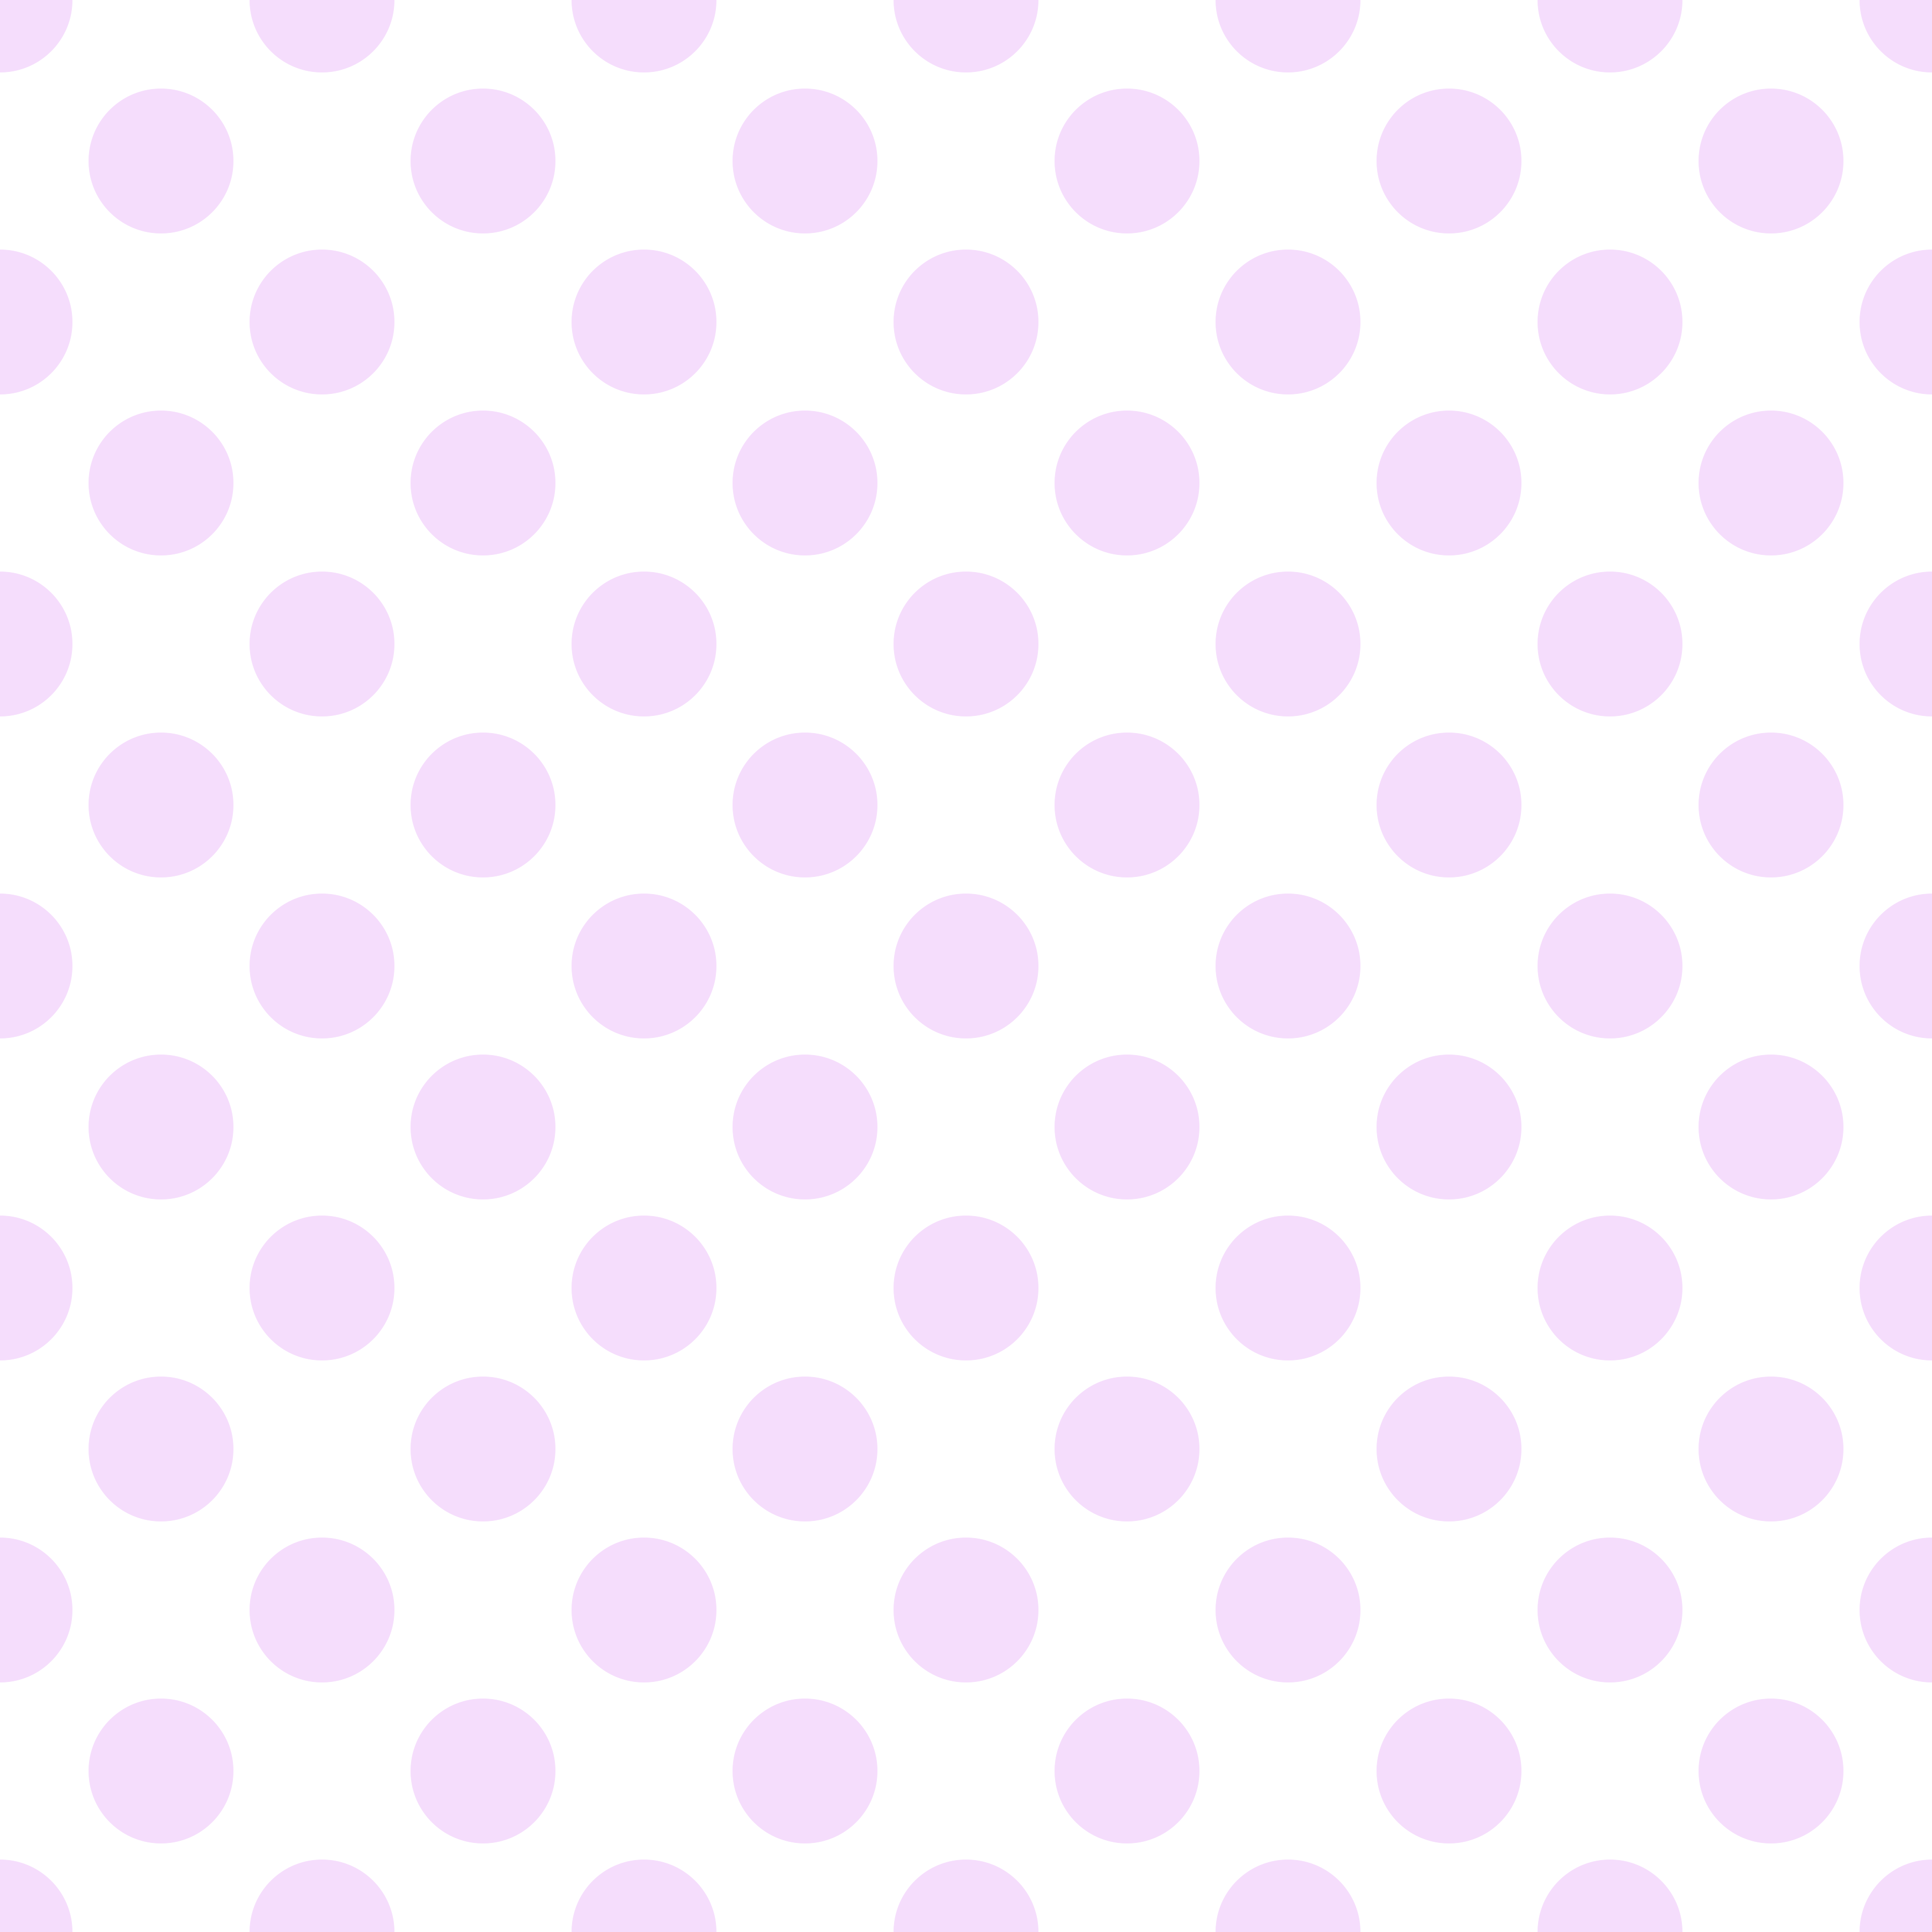 Polka Dot 1 cm Beyaz - Lavender Puantiye Dekoratif Baskı Kumaş